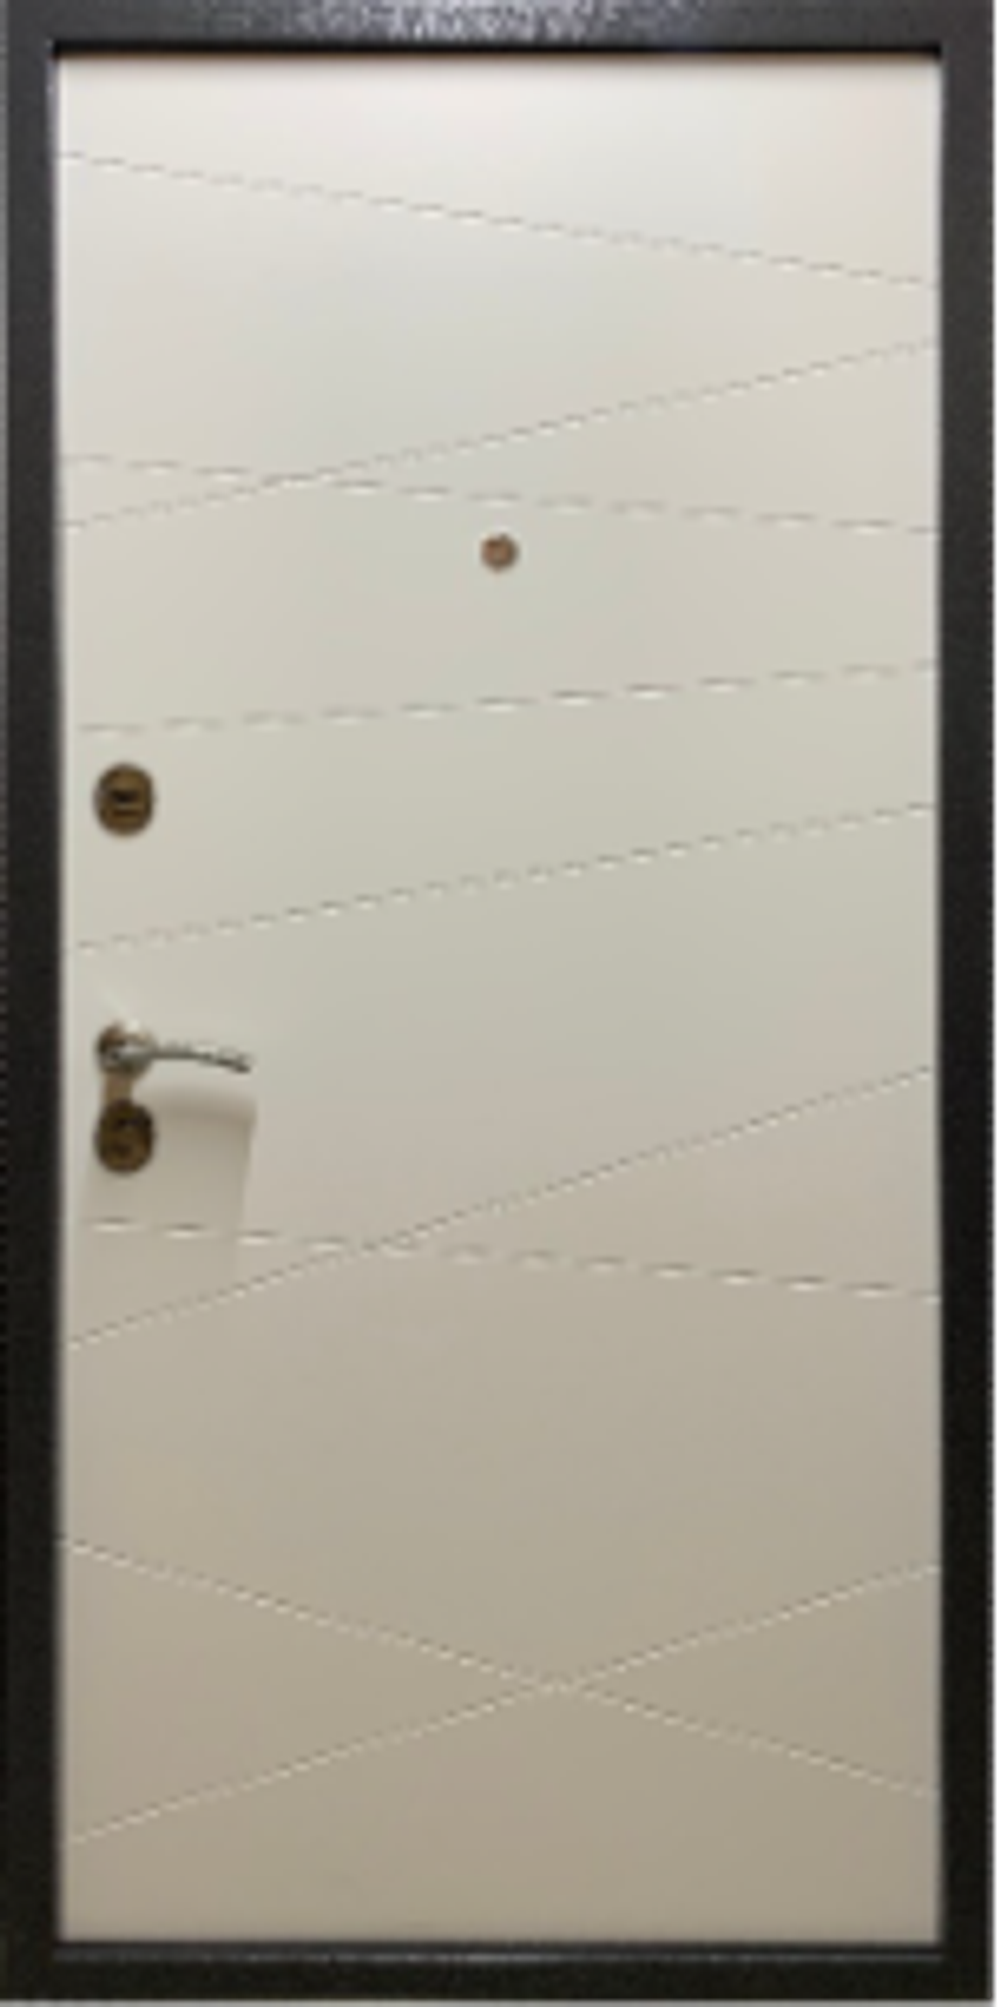 Входная дверь Мастино Home ECO RL-3: Размер 2050/860-960, открывание ЛЕВОЕ